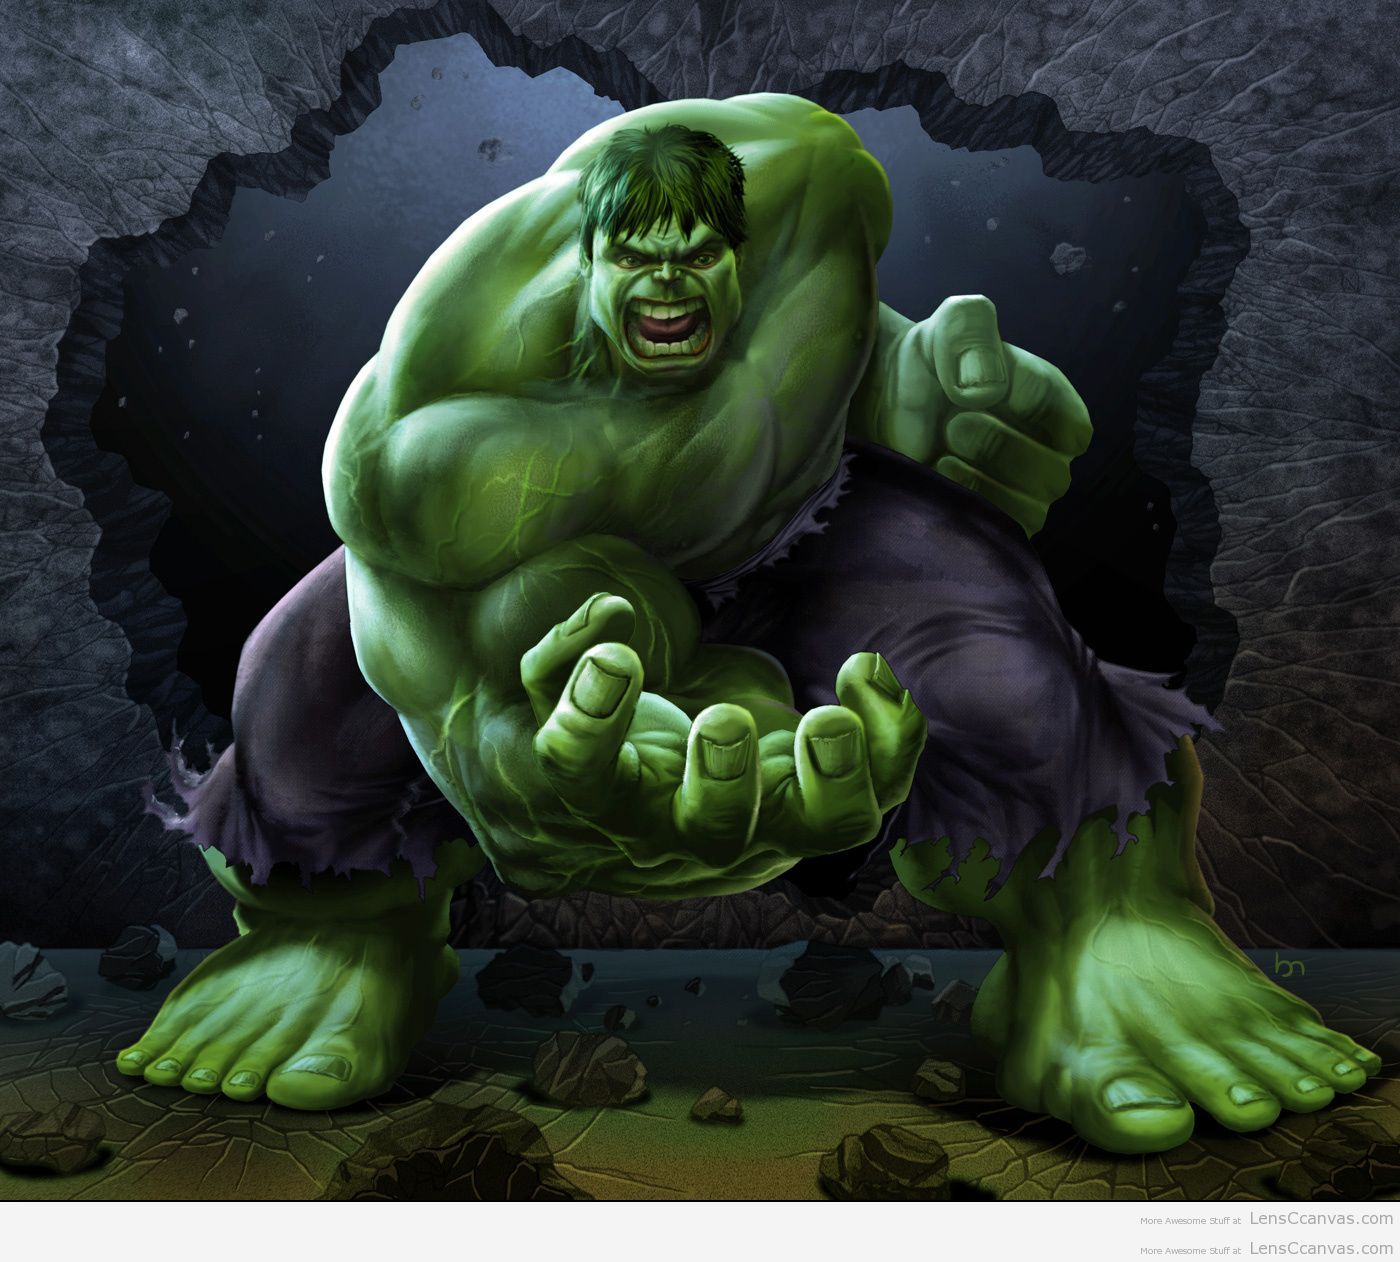 hulk wallpaper 4k for mobile screen #hulk #shorts #avengers #viral - YouTube